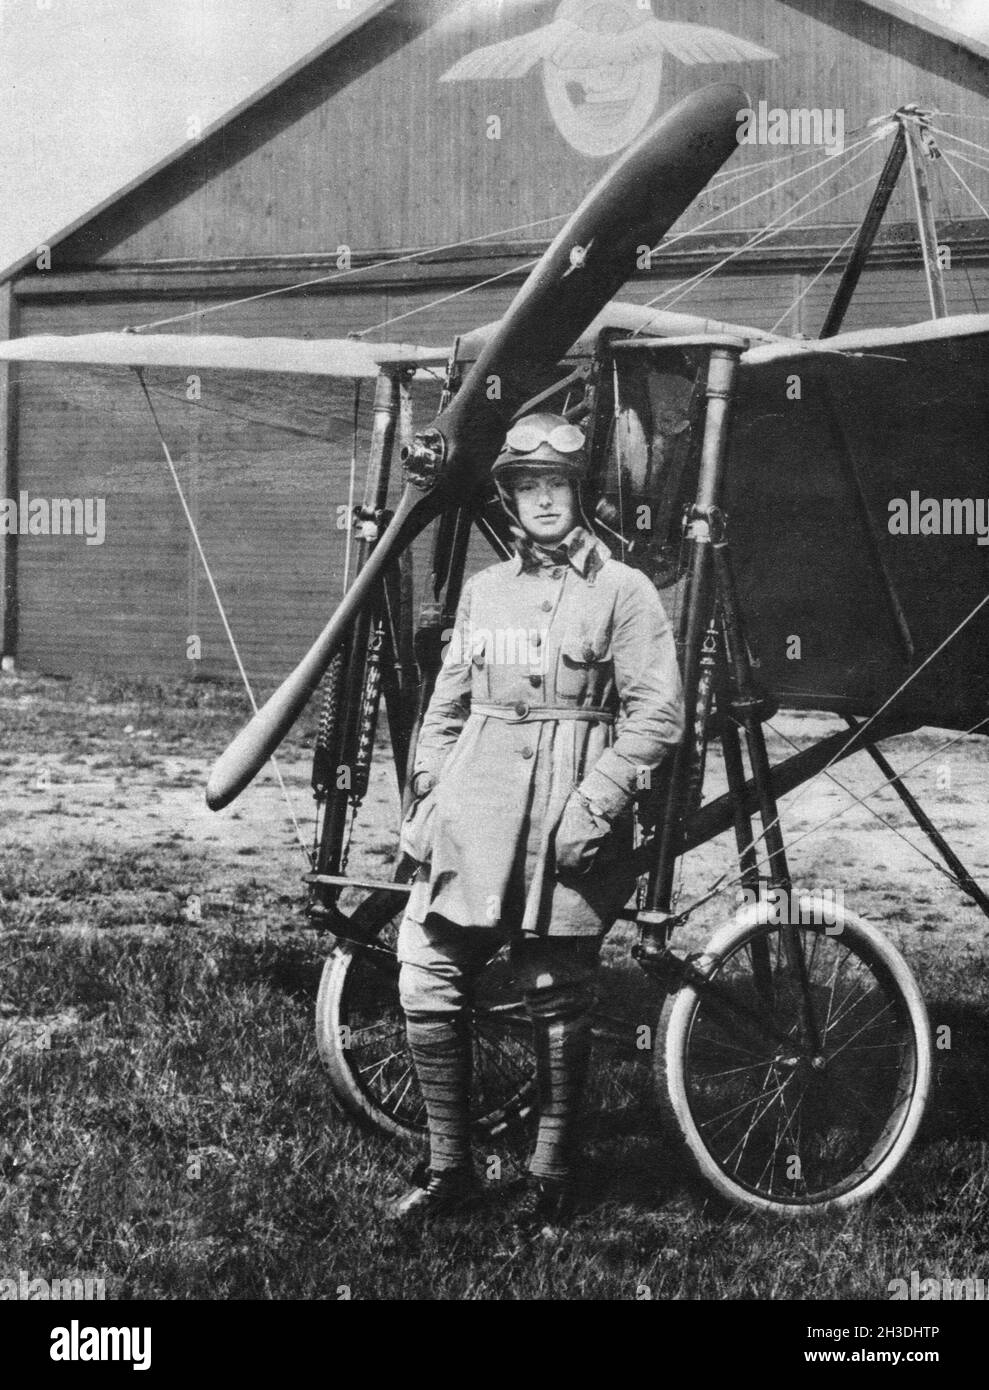 Elsa Teresia Andersson nato il 27 1897 aprile, morto il 22 1922 gennaio è stato un pilota e aviatore svedese piooner e la prima donna svedese che ha ottenuto un permesso di volo. Fu anche una delle prime paracadute svedesi. Al suo quinto salto è morta. Foto Stock